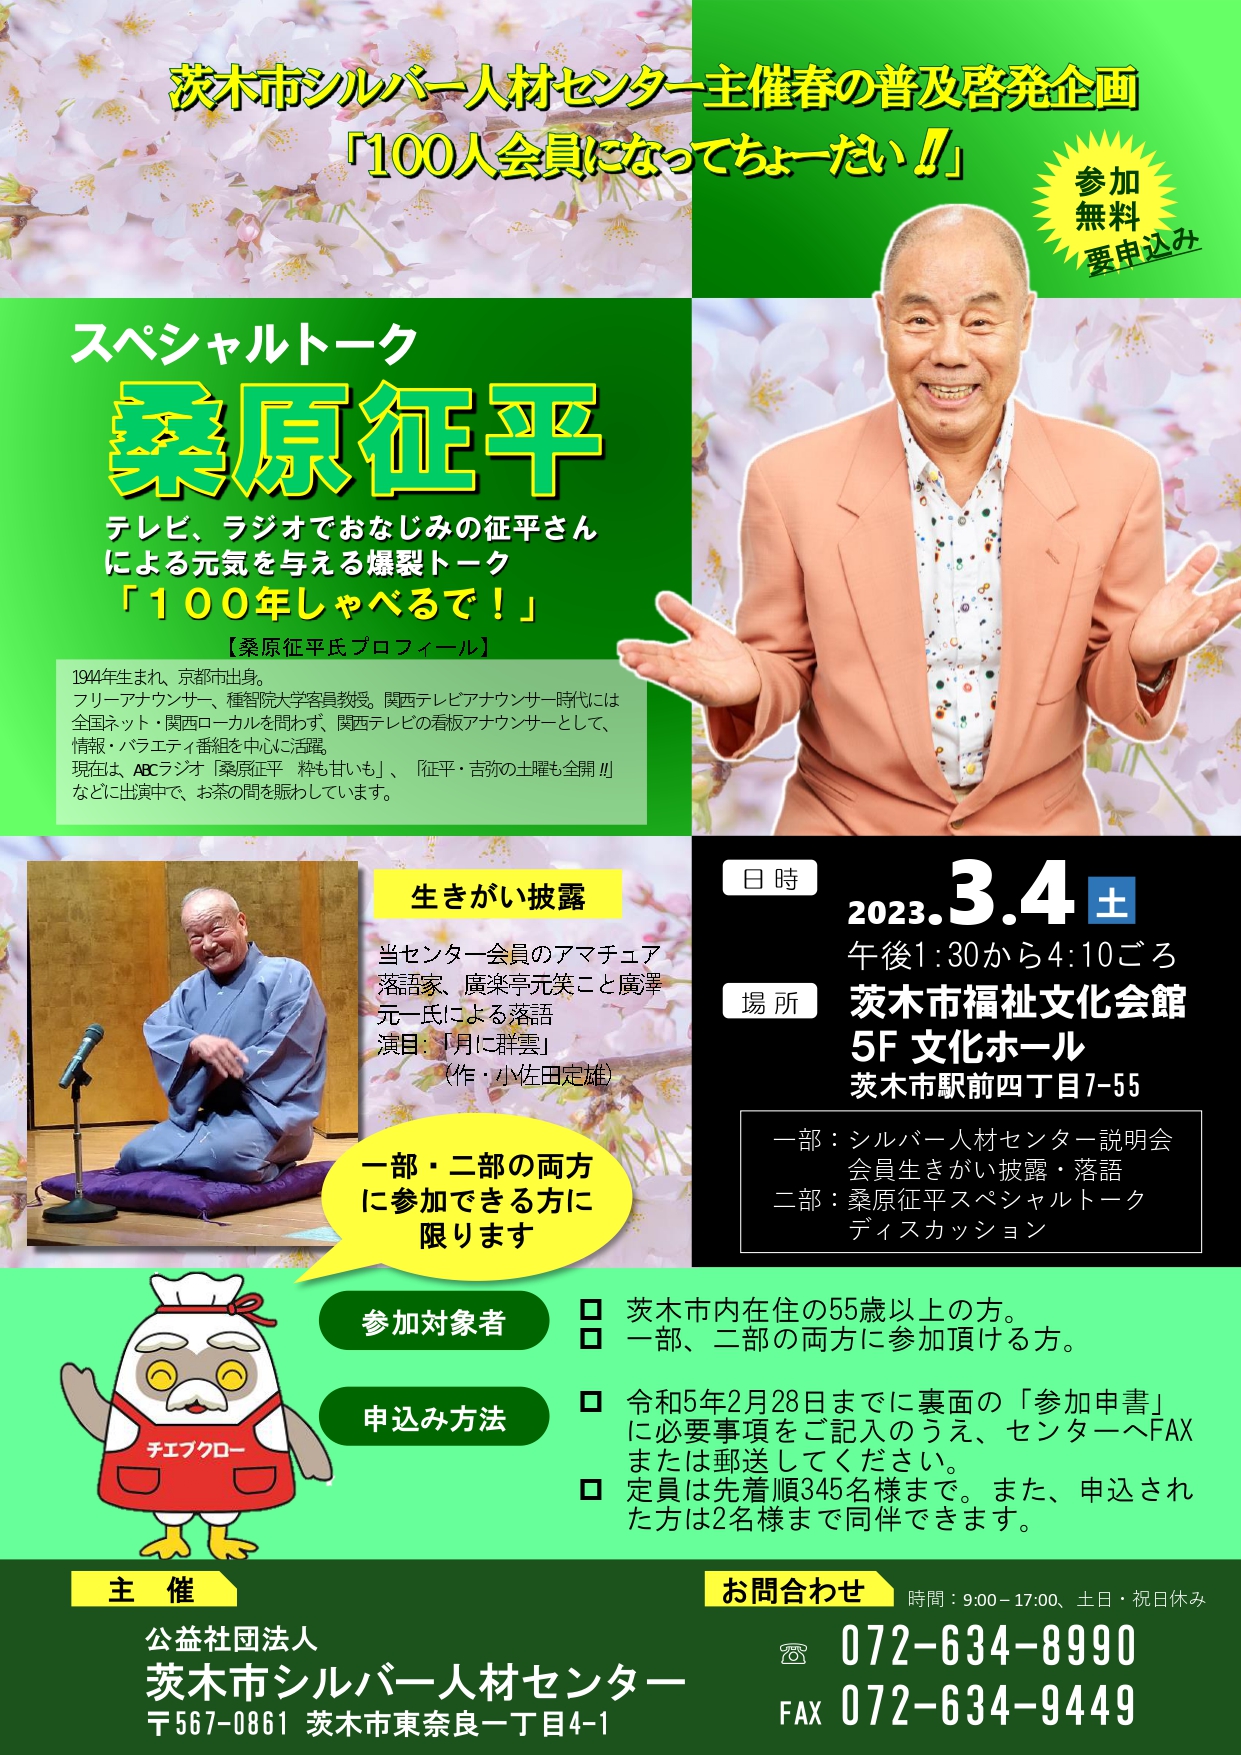 茨木市シルバー人材センター主催春の普及啓発企画「100人会員になってちょーだい！！」